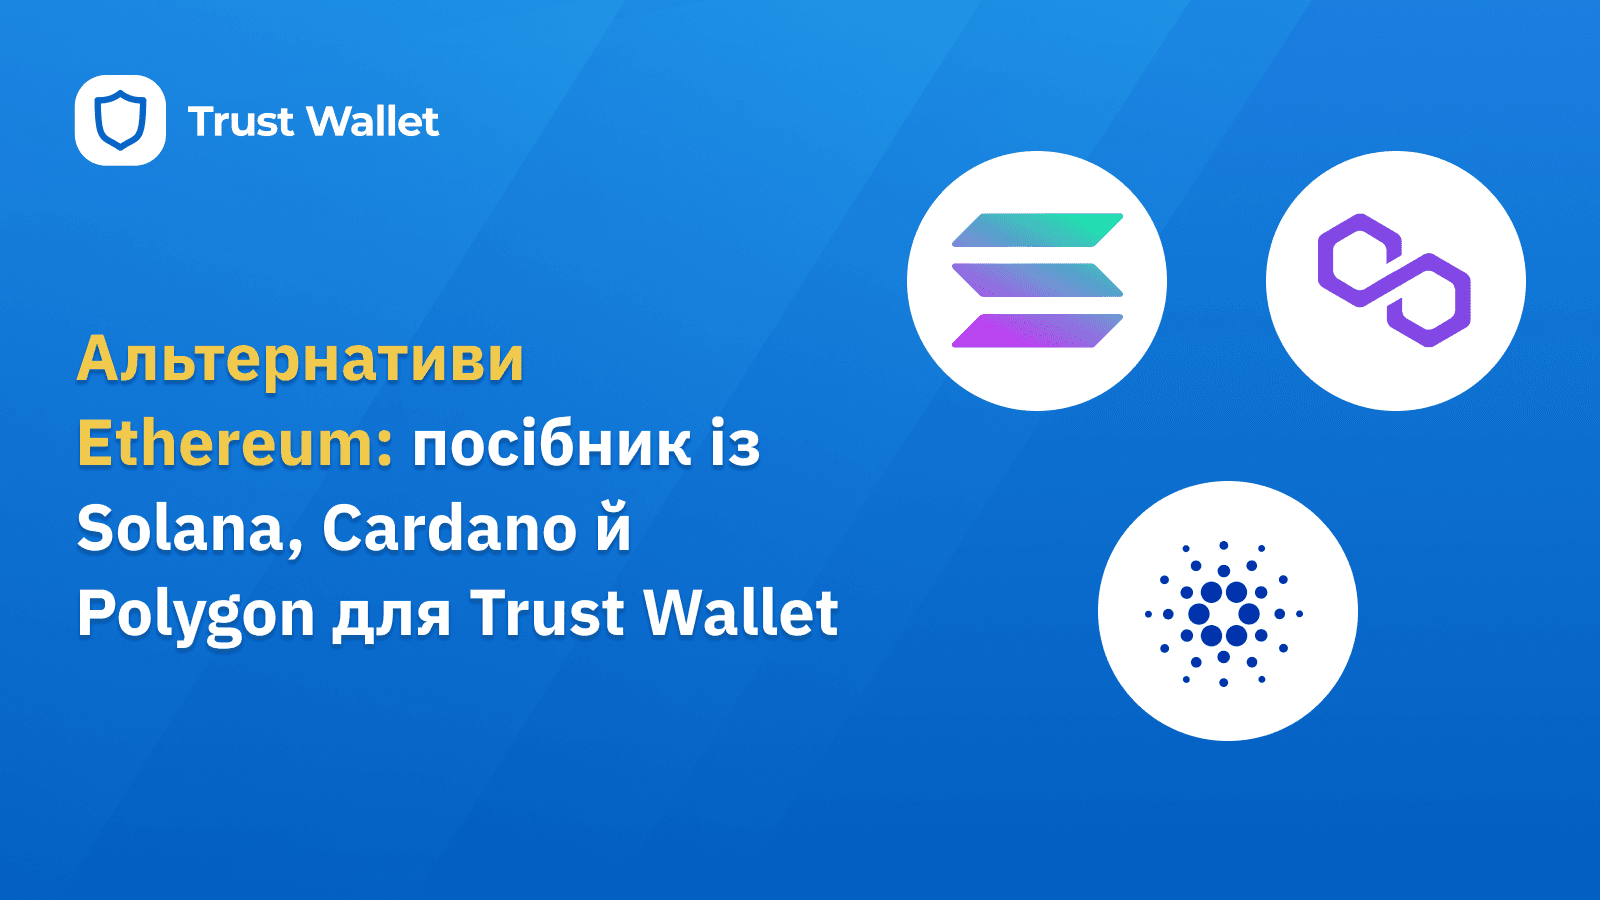 Альтернативи Ethereum: посібник із Solana, Cardano й Polygon для Trust Wallet